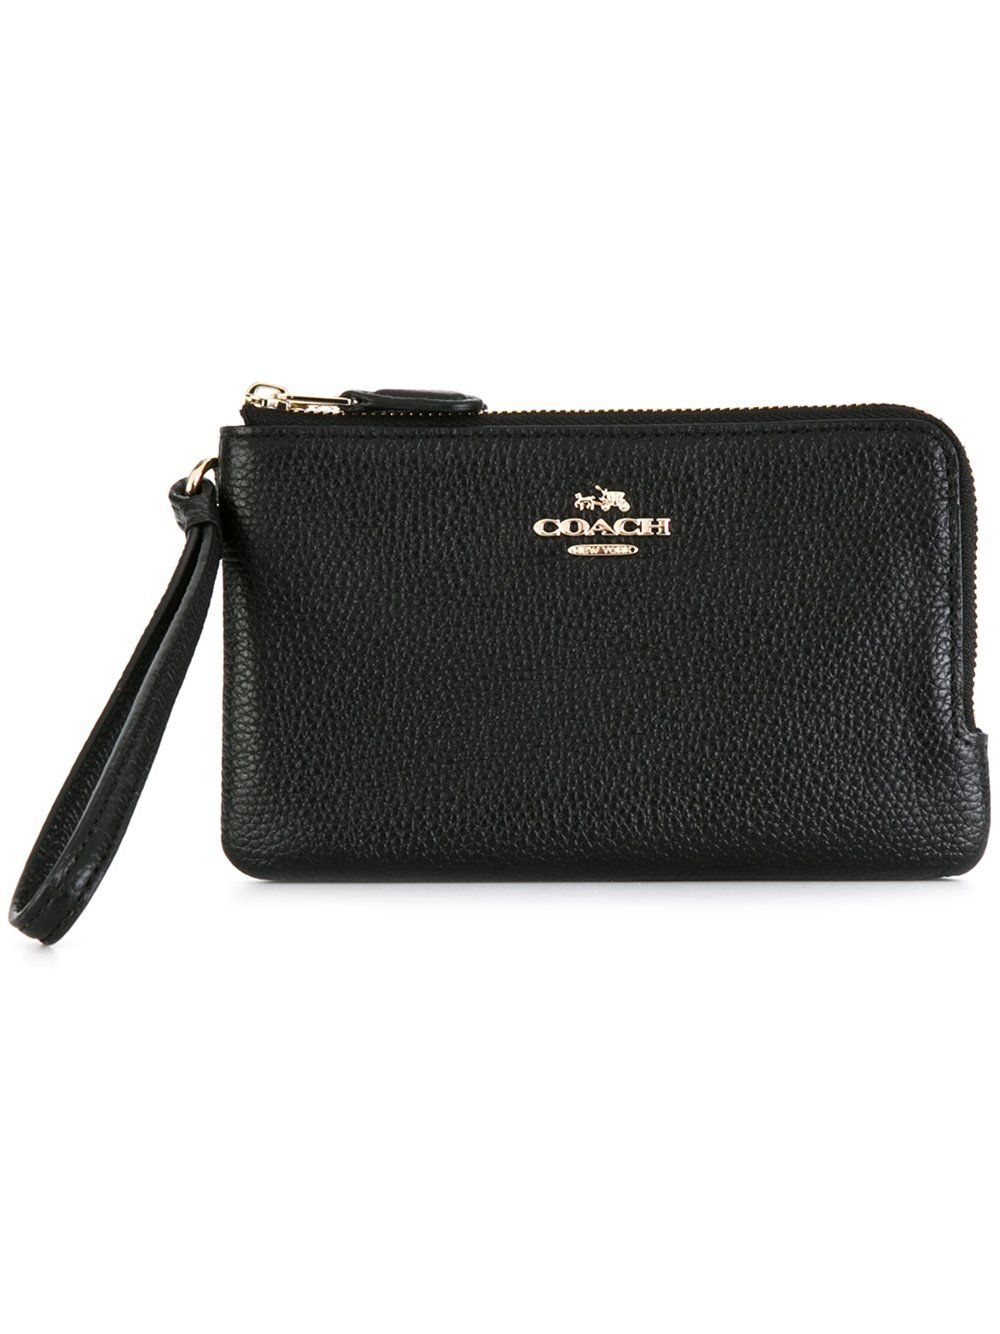 COACH Leather Zip Around Wallet in Black - Lyst